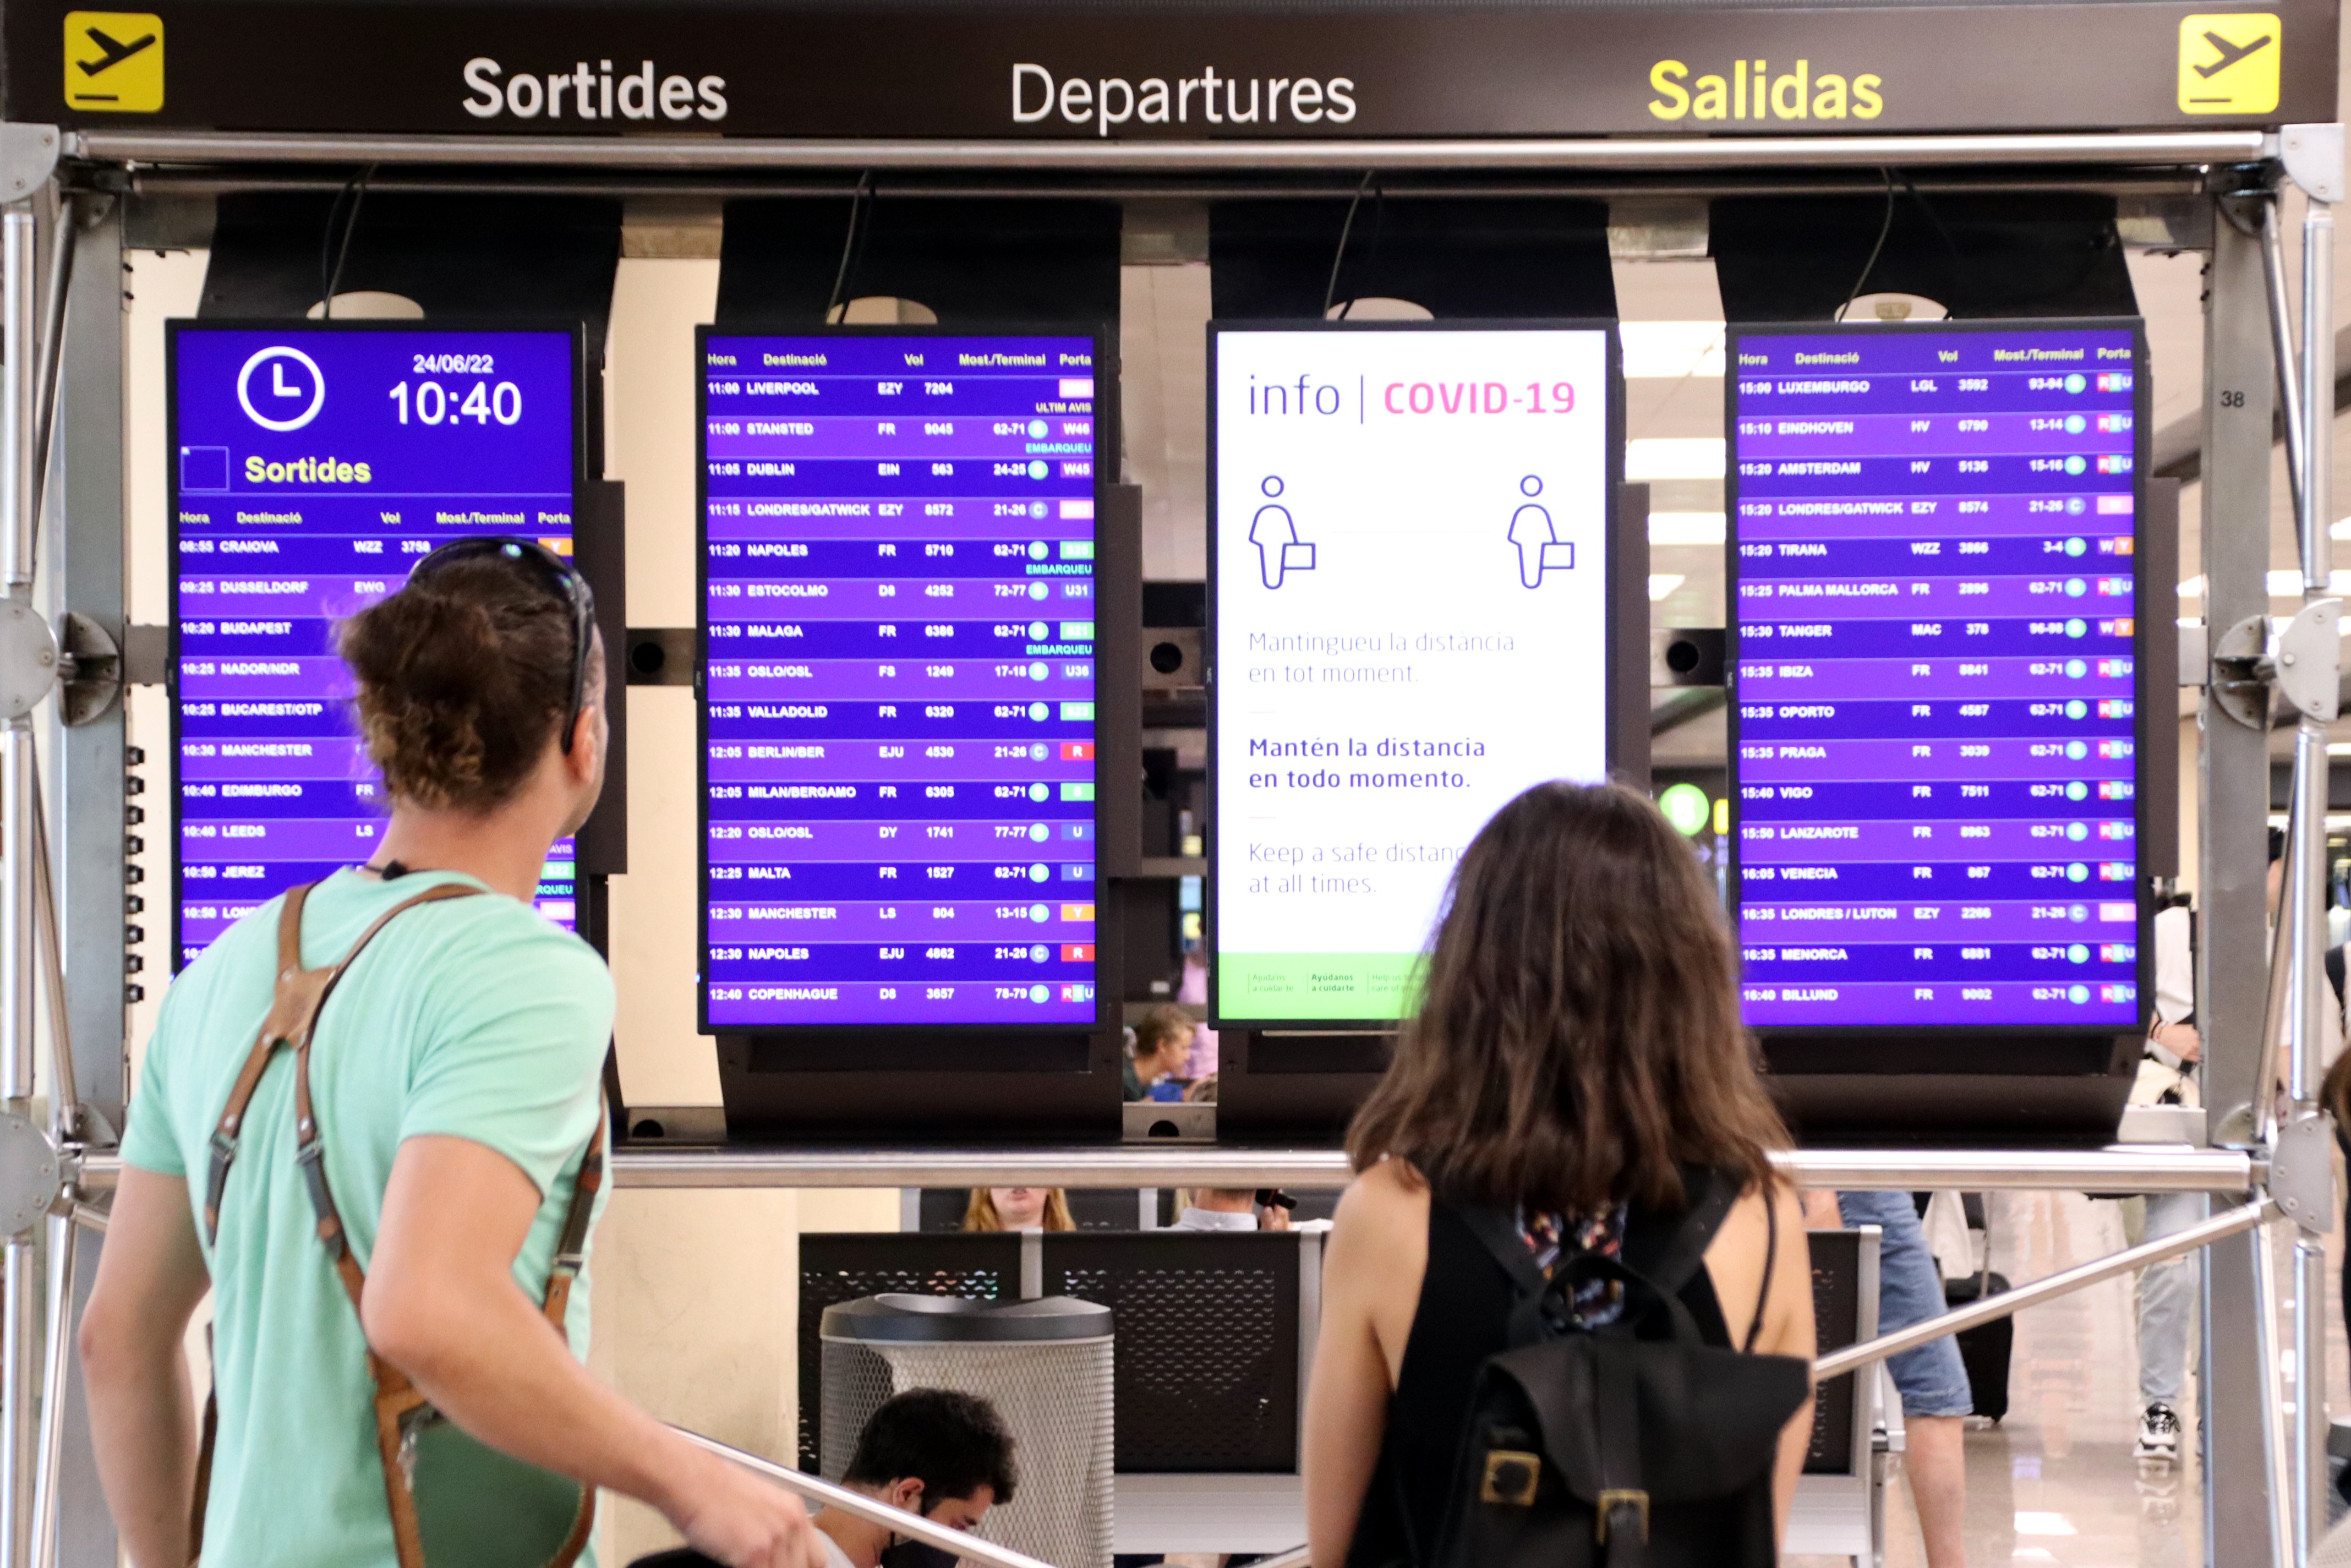 8 vuelos cancelados de Ryanair y 2 de EasyJet en el aeropuerto de Barcelona en un nuevo día de vaga